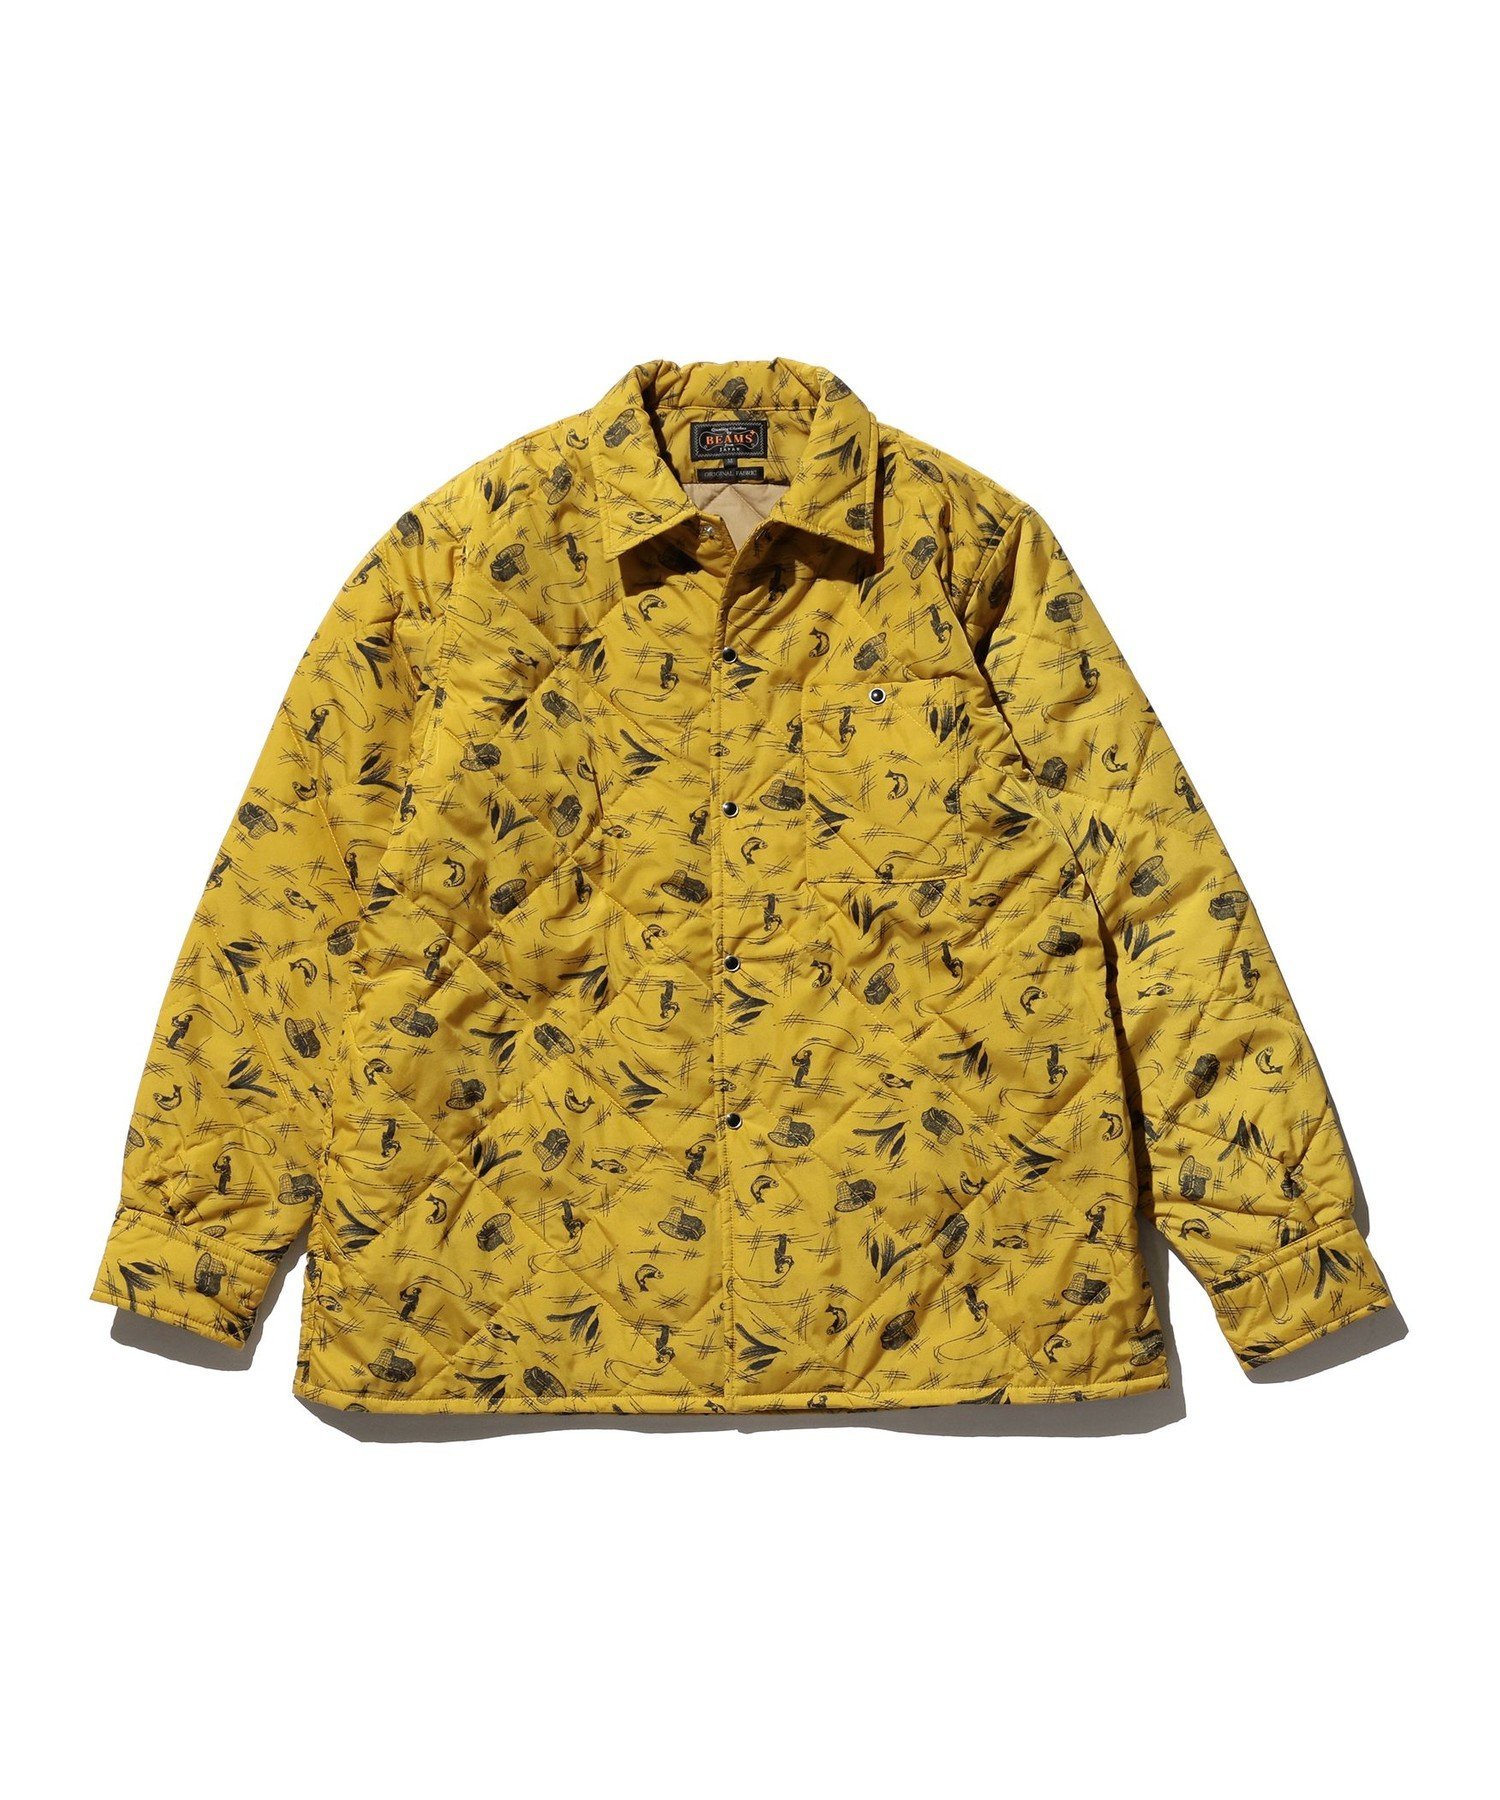 BEAMS PLUS / ナイロン キルト シャツ ジャケットのサムネイル